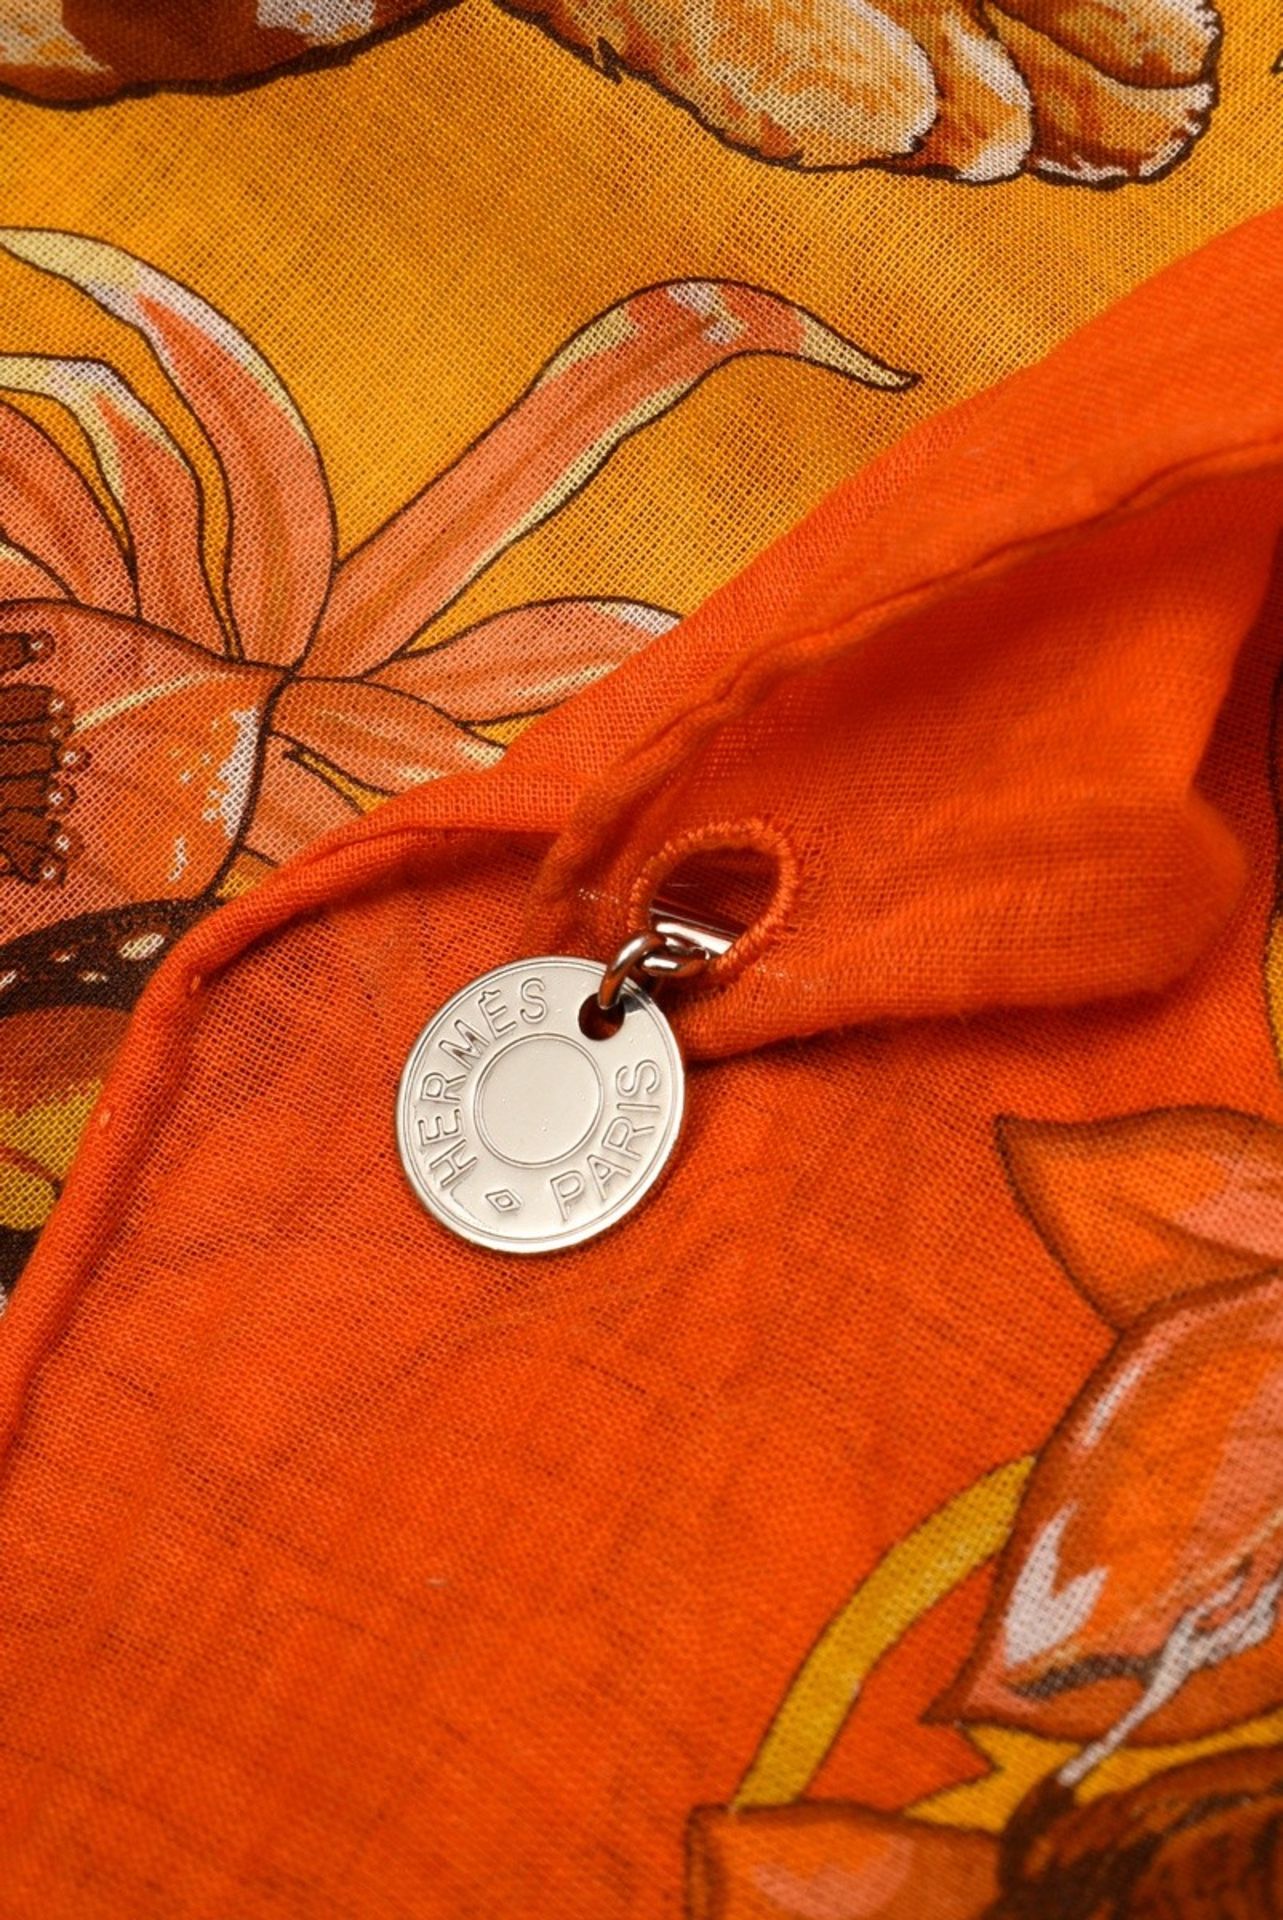 Hermès cotton carré "Jungle Love", design: Robert Dallet 2000, with silver label pendant, 65x65cm,  - Image 6 of 7